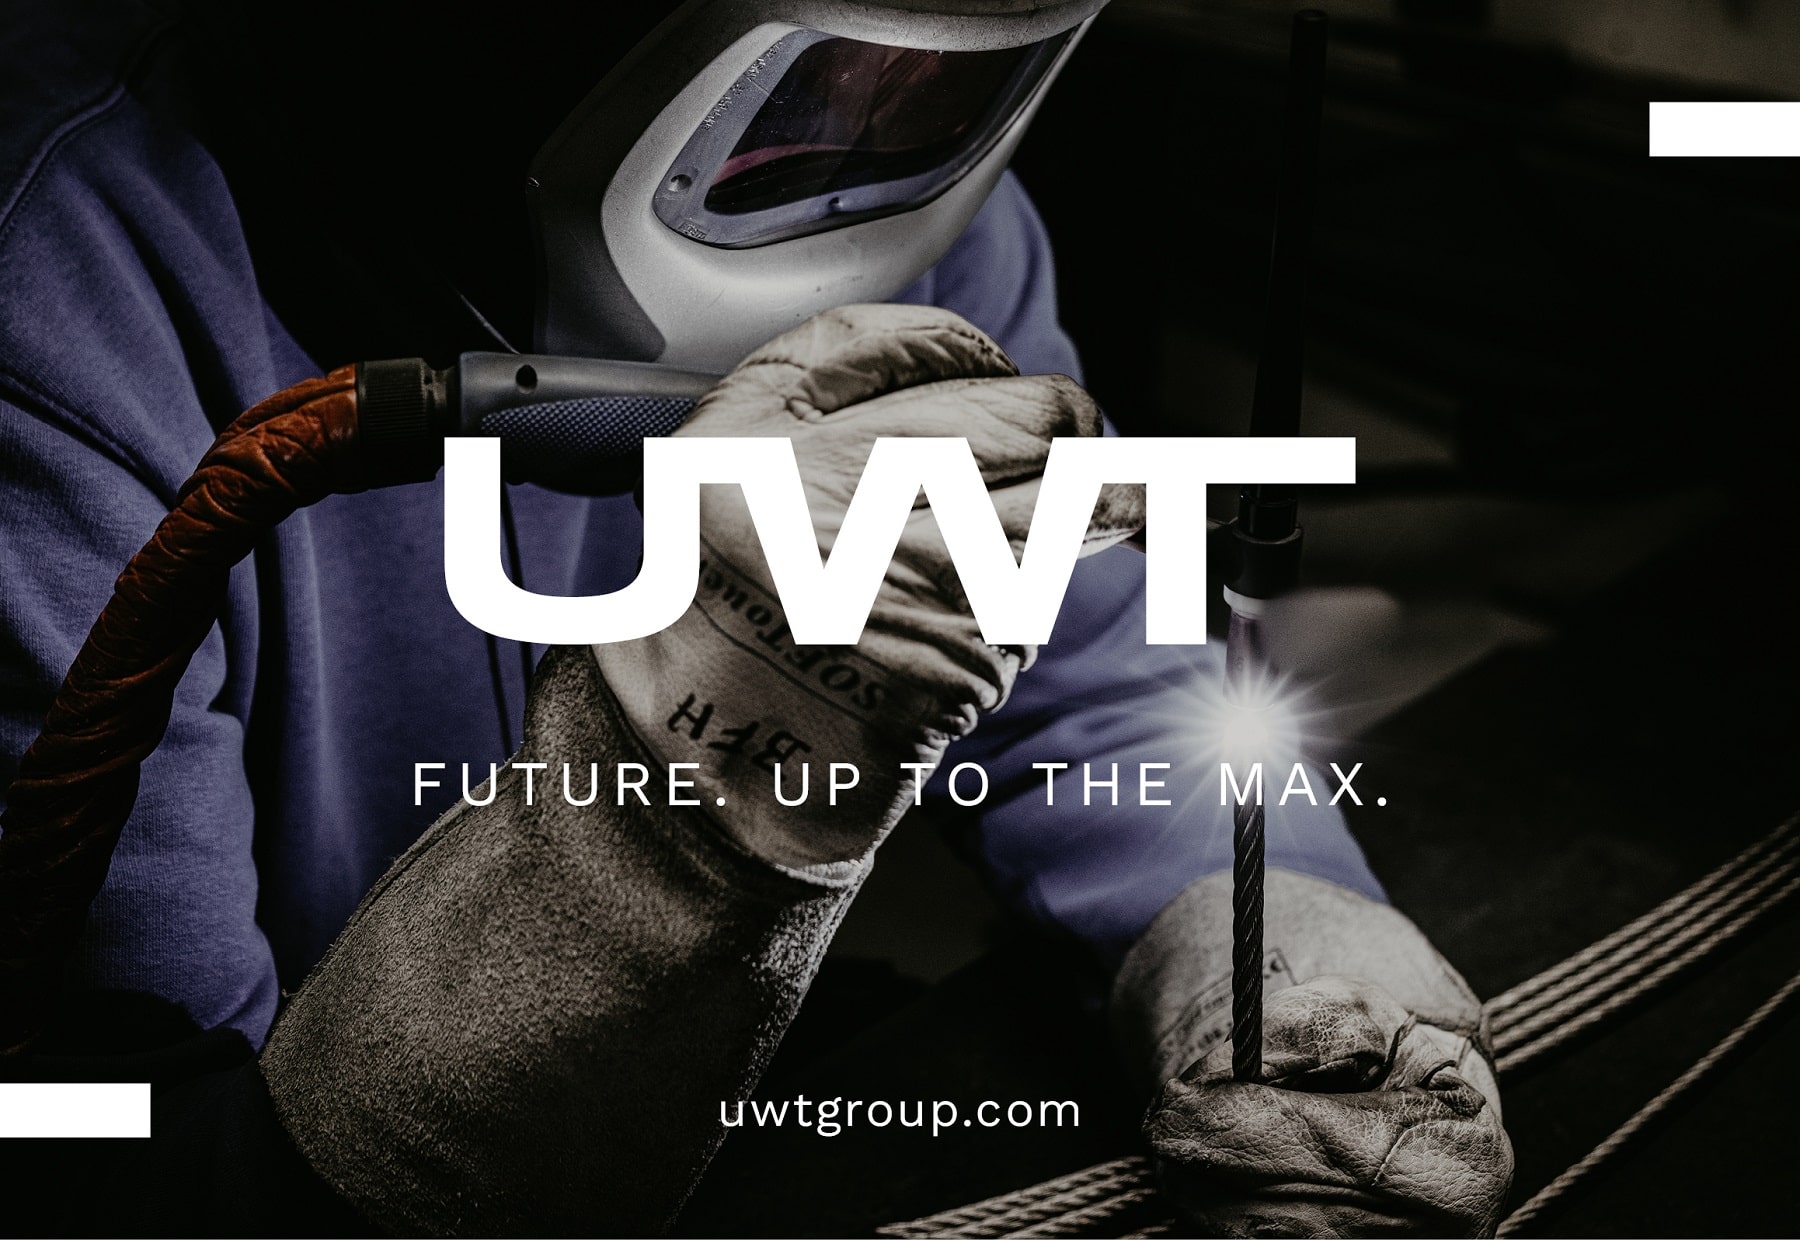 UWT Logo groß in der Mitte. Im Hintergrund ein Schweißer mit Handschuhen, Brille und einem Metallstrang und Schweißstahl. Unter dem Logo Future. Up to the max. und uwtgroup.com